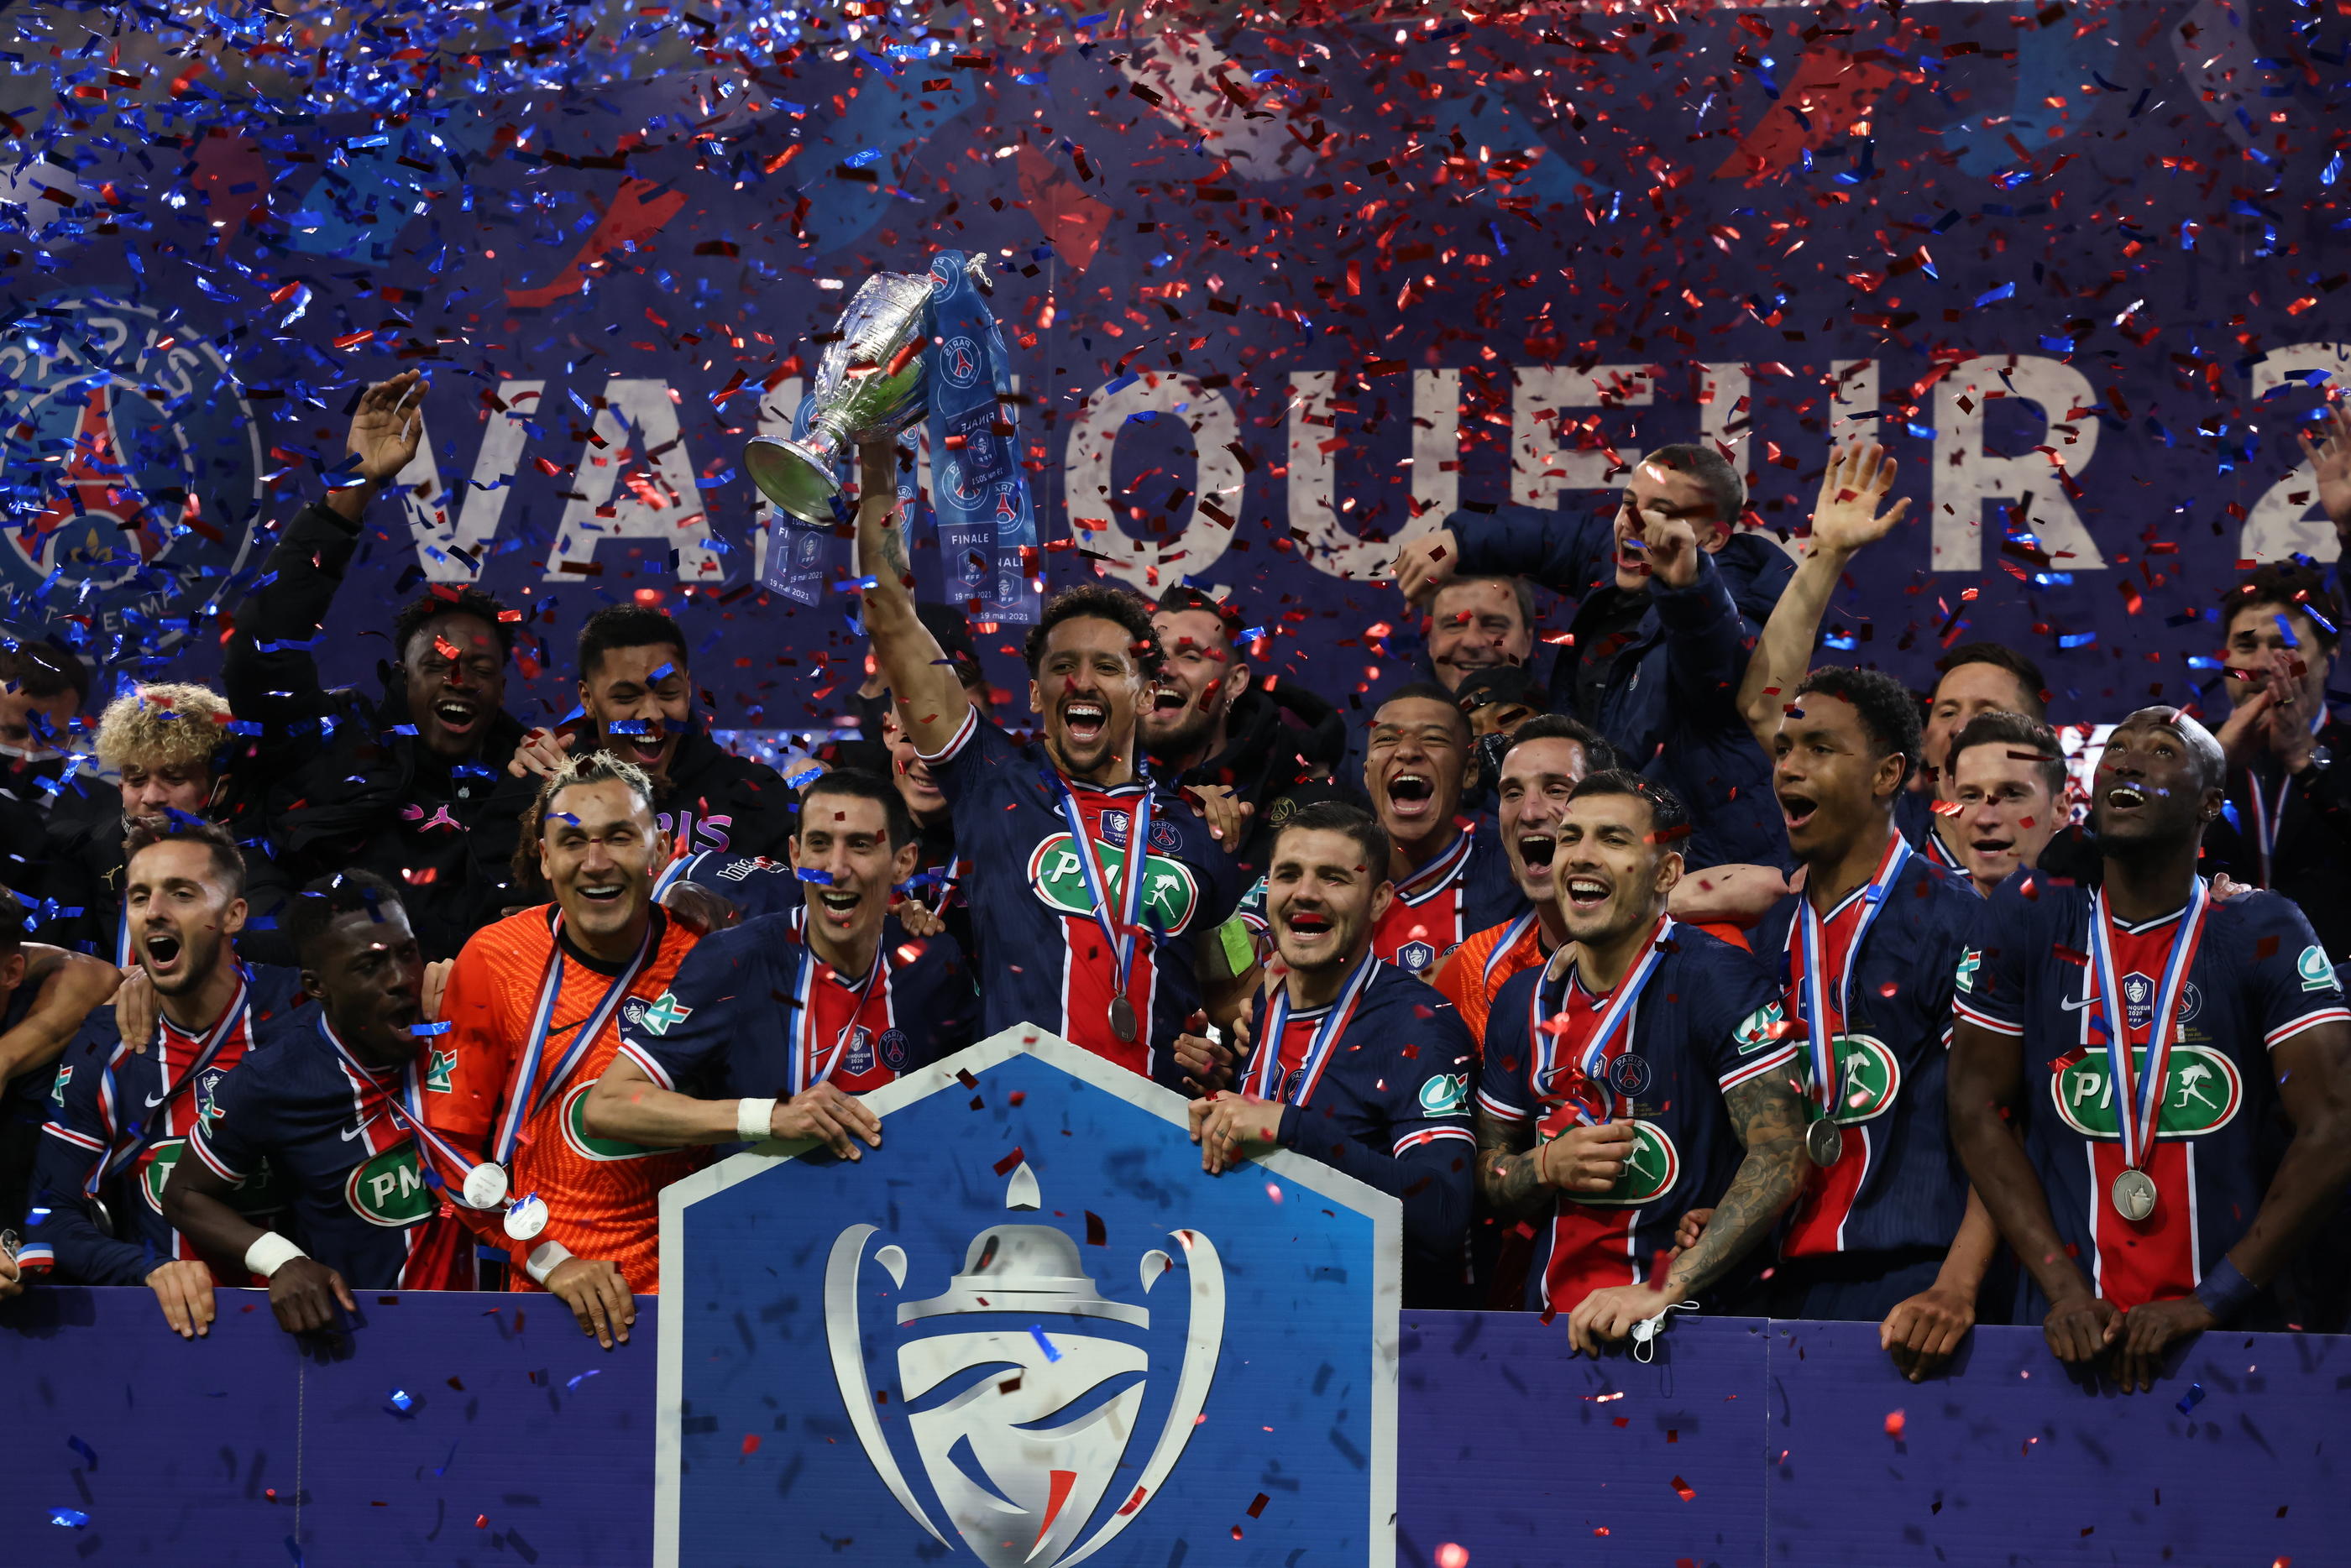 Contre Lyon samedi, le Paris Saint-Germain peut remporter la Coupe de France pour la quinzième fois. LP / Arnaud Journois